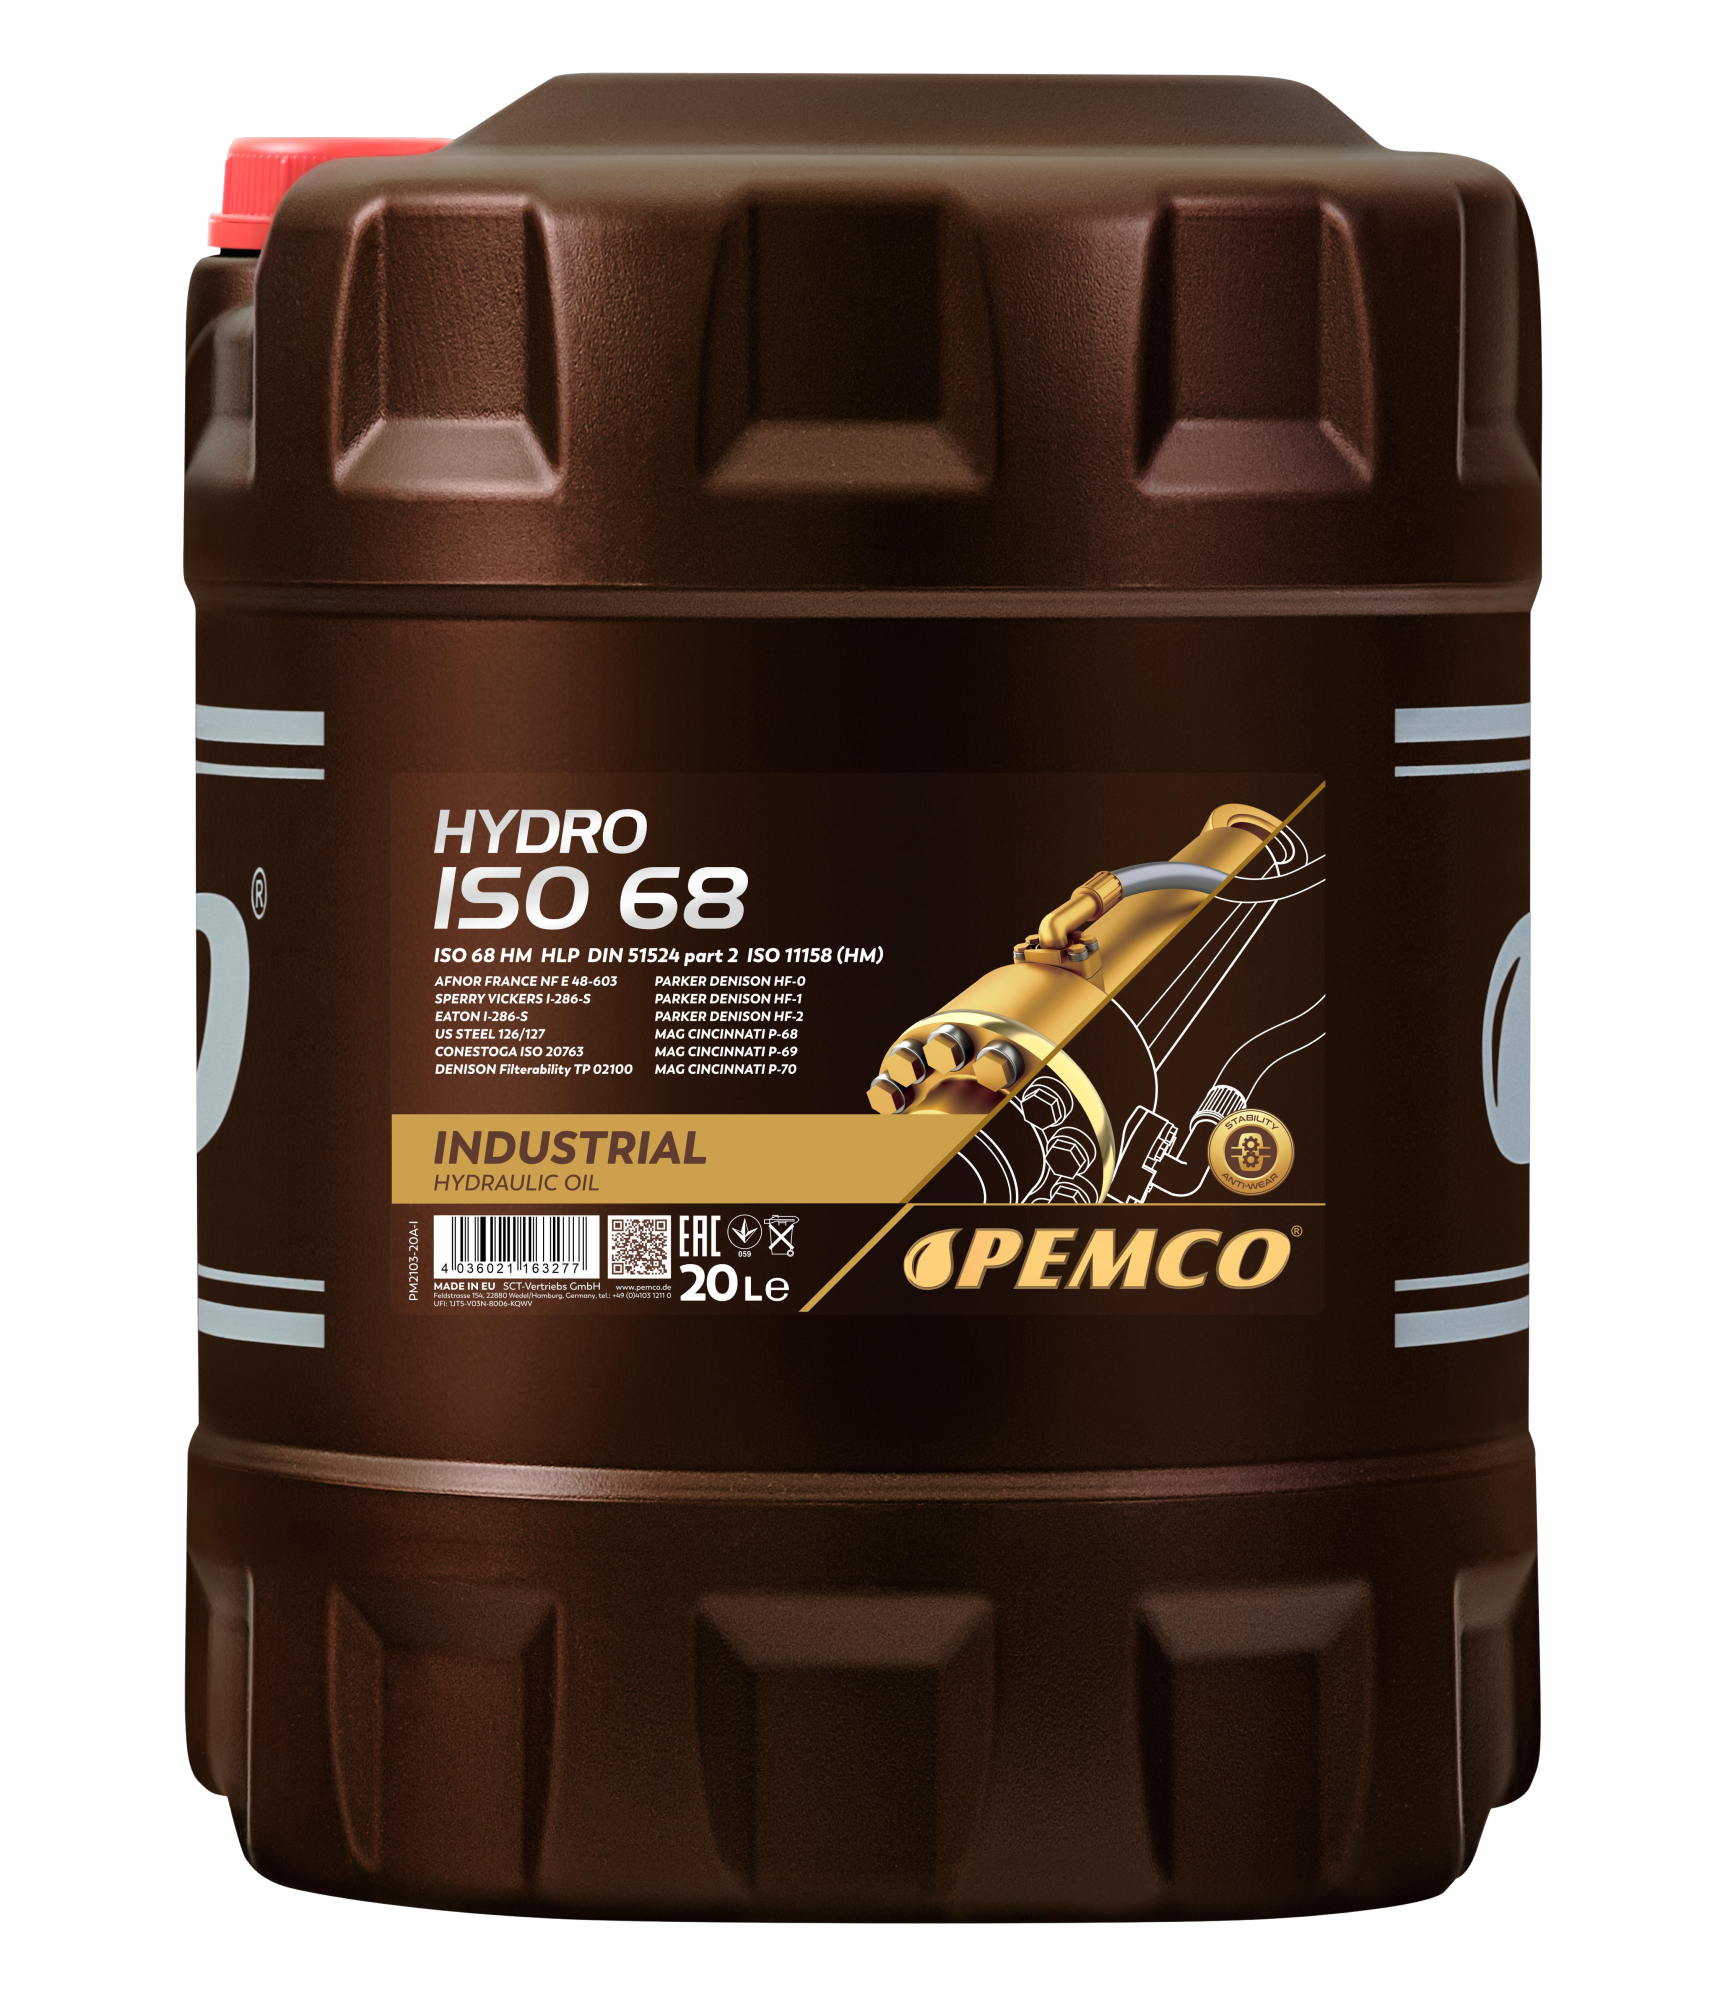 Гидравлическое масло PEMCO Hydro ISO 68 минеральное, 20л (PM2103-20)